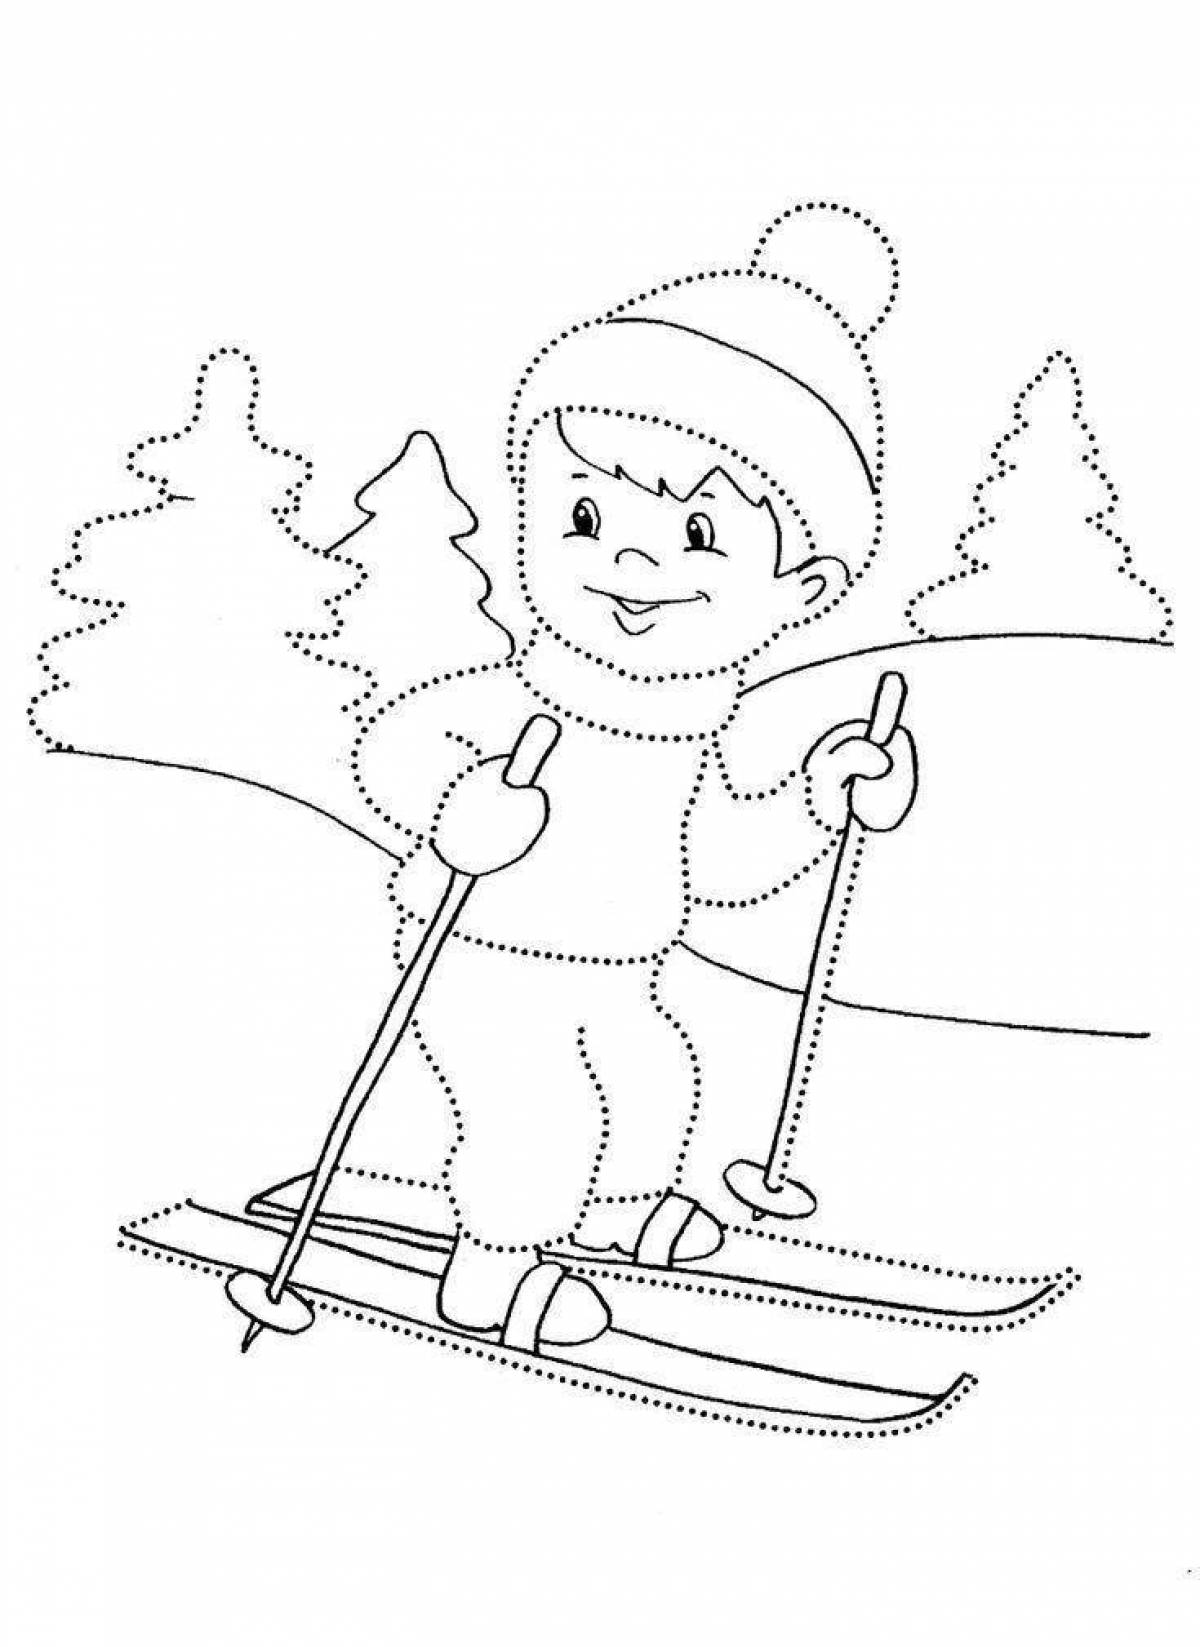 Прекрасная картинка с изображением зимних видов спорта для детей в детском саду